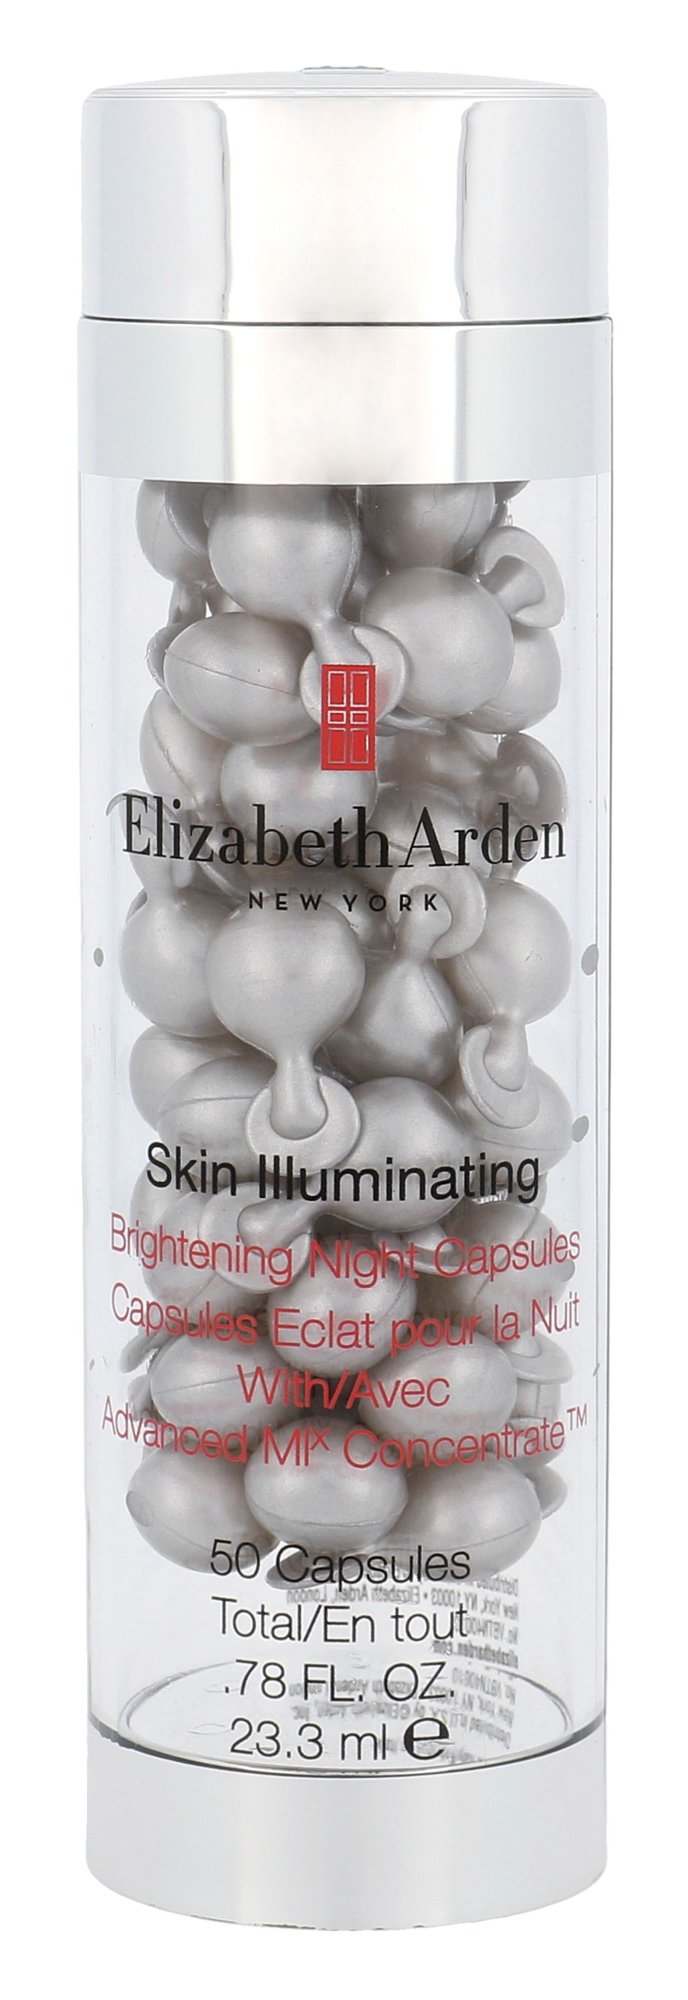 Elizabeth Arden Skin Illuminating Brightening Night Capsules Veido serumas